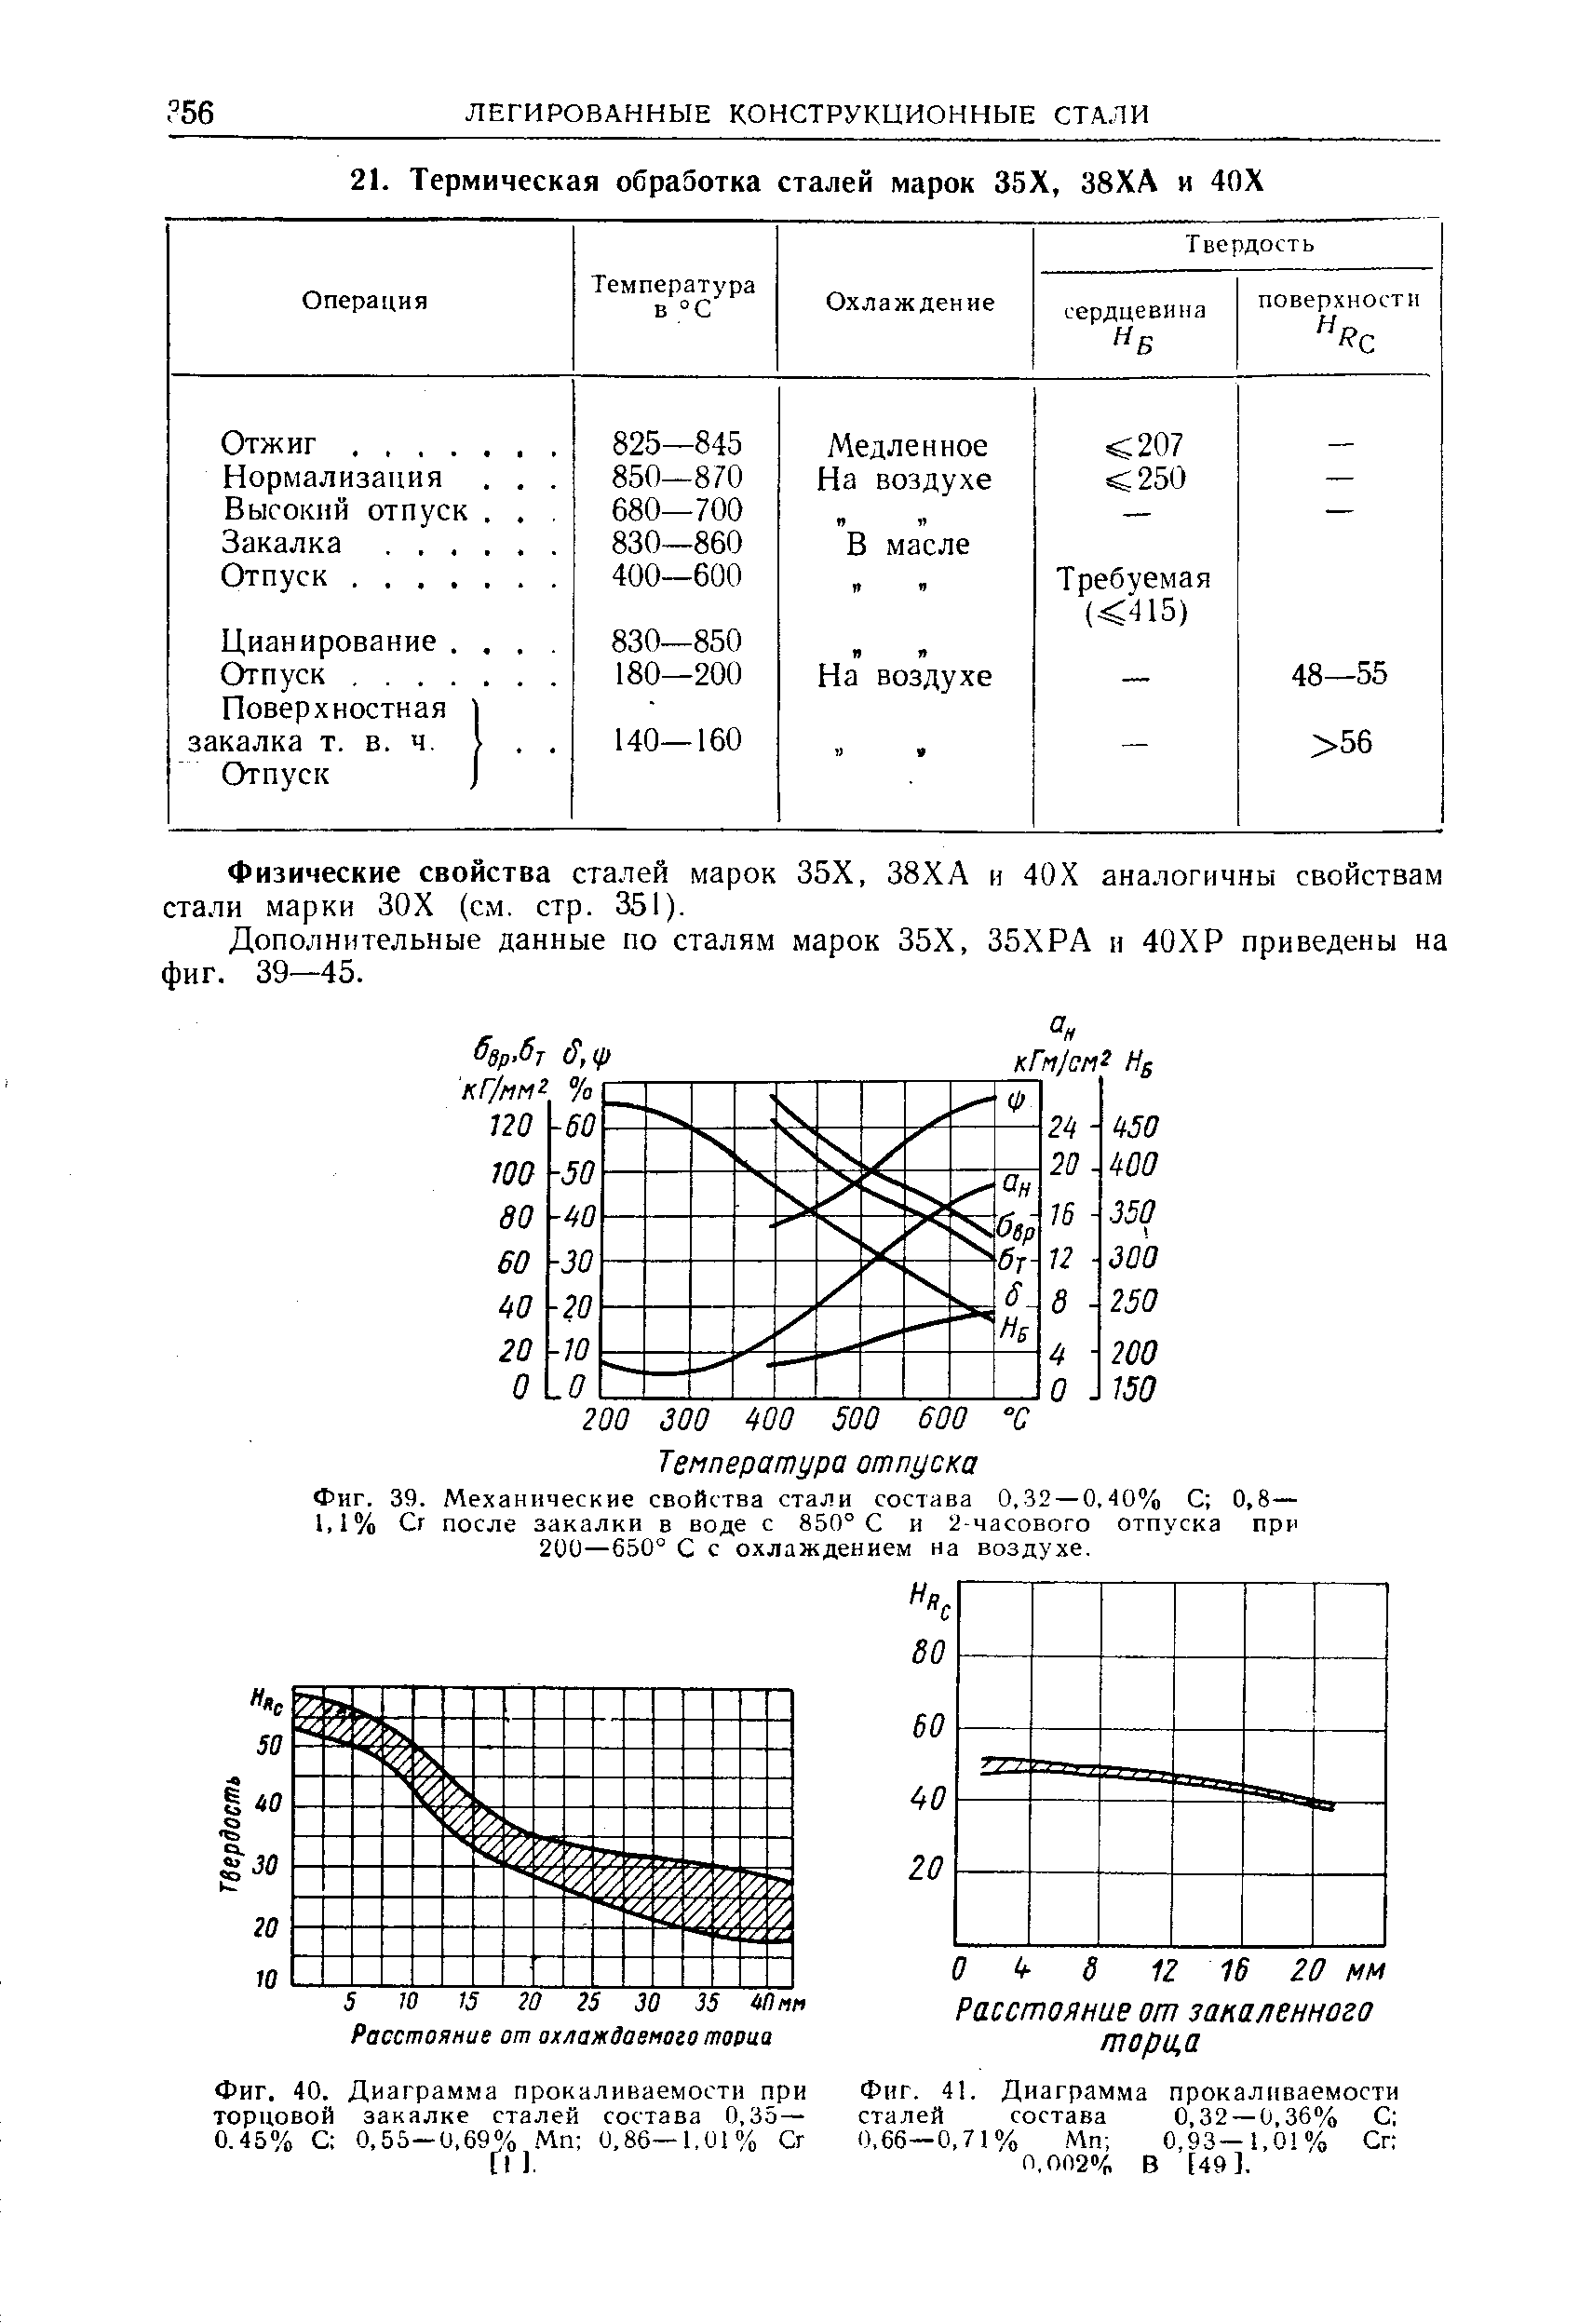 Фиг. 40. Диаграмма прокаливаемости при <a href="/info/326280">торцовой закалке сталей</a> состава 0,35 — 0.45% С 0.55—0.69% Мп 0,86—1,01% Сг
